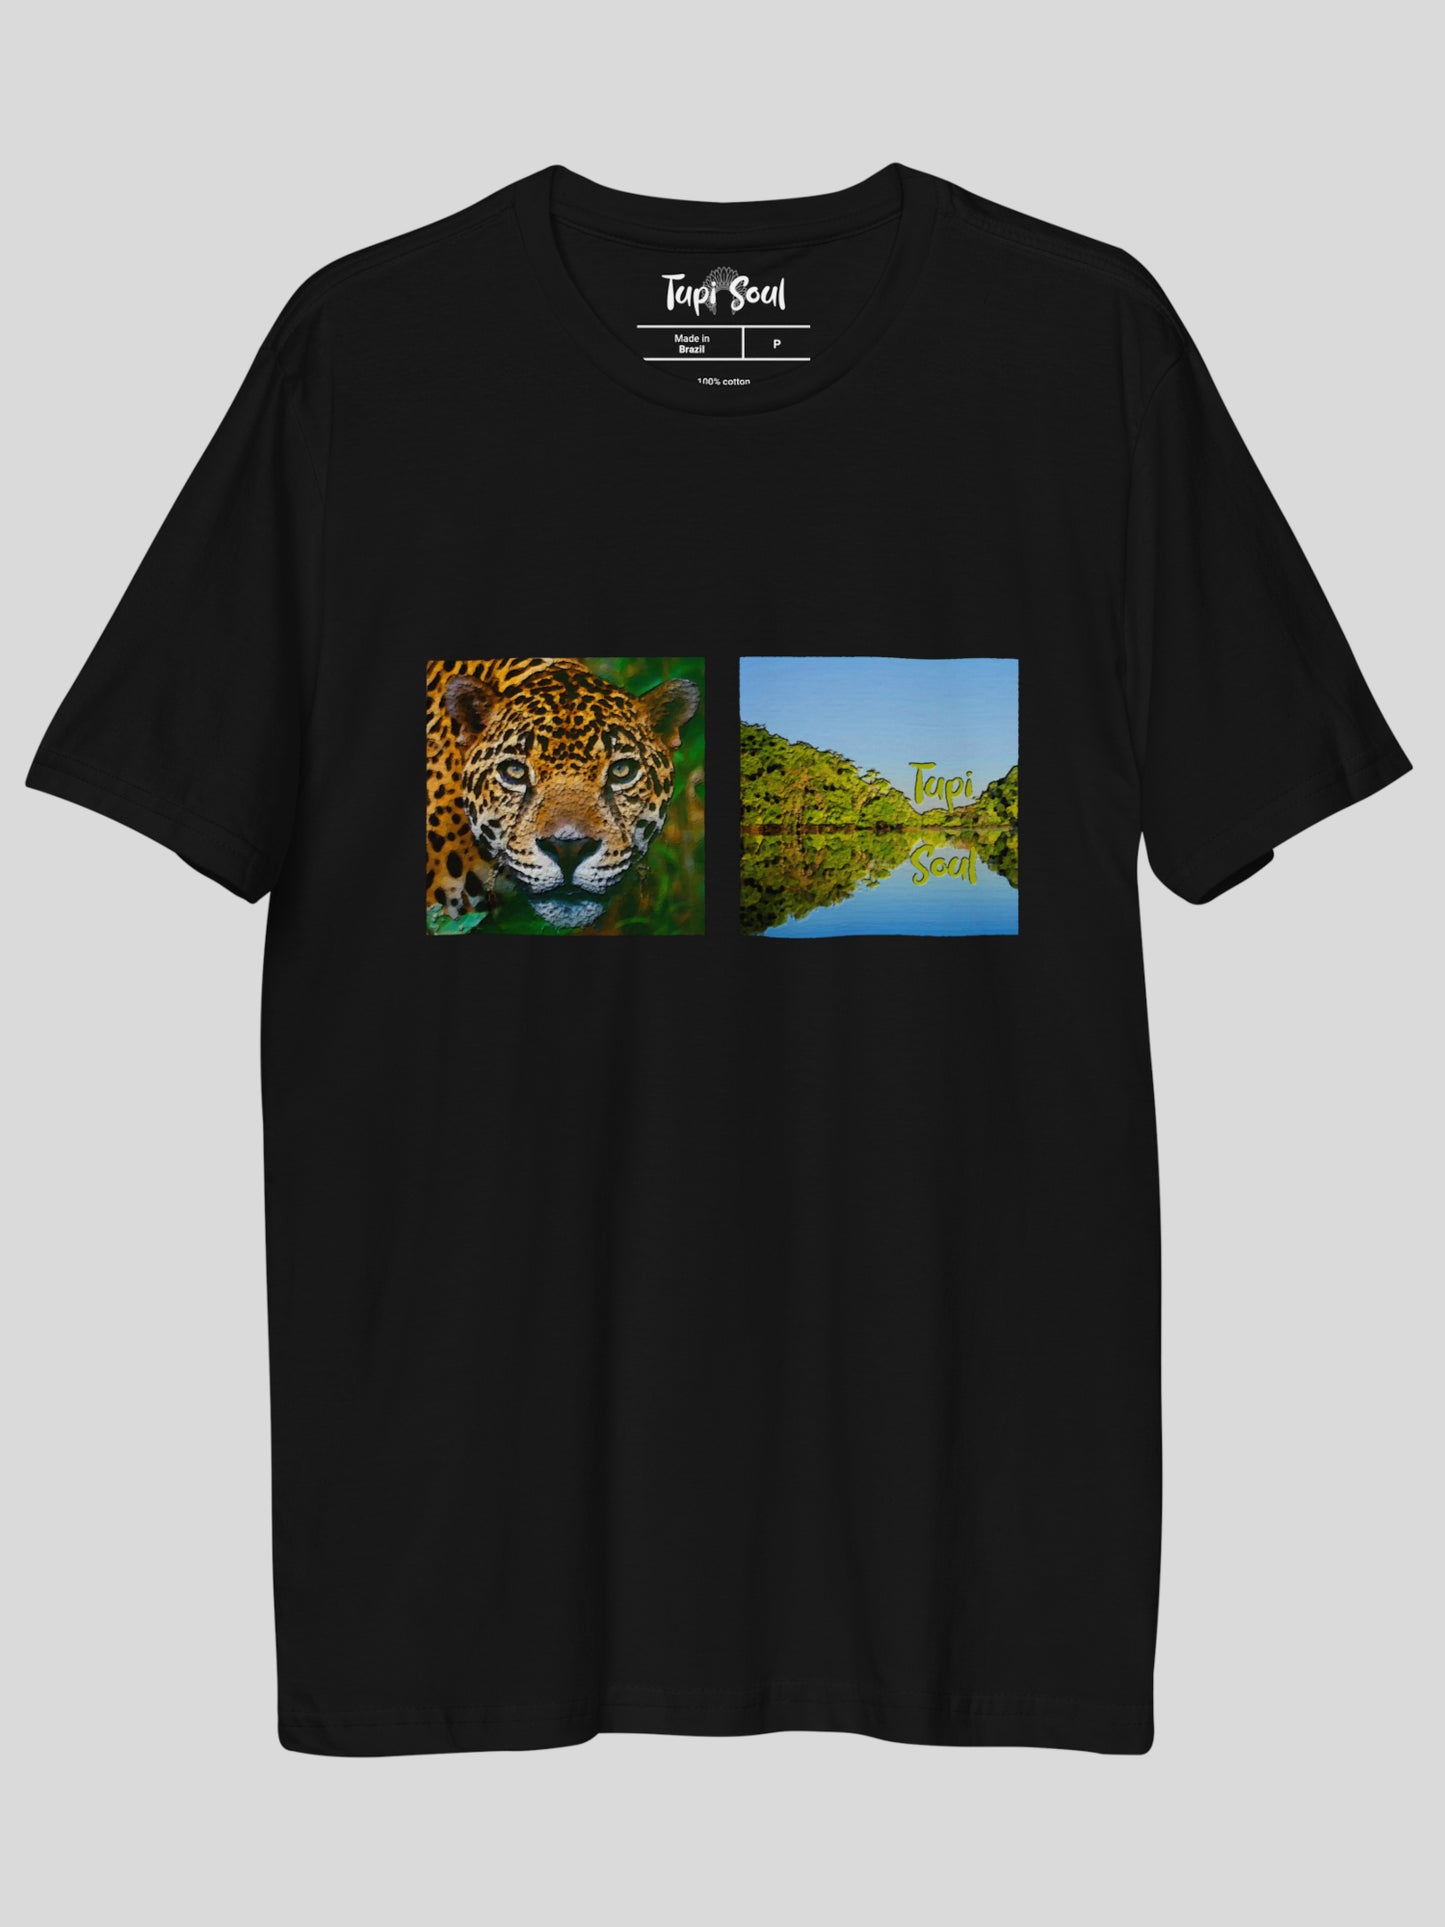 Camiseta Onça-Pintada Amazônica: Natureza em Foco